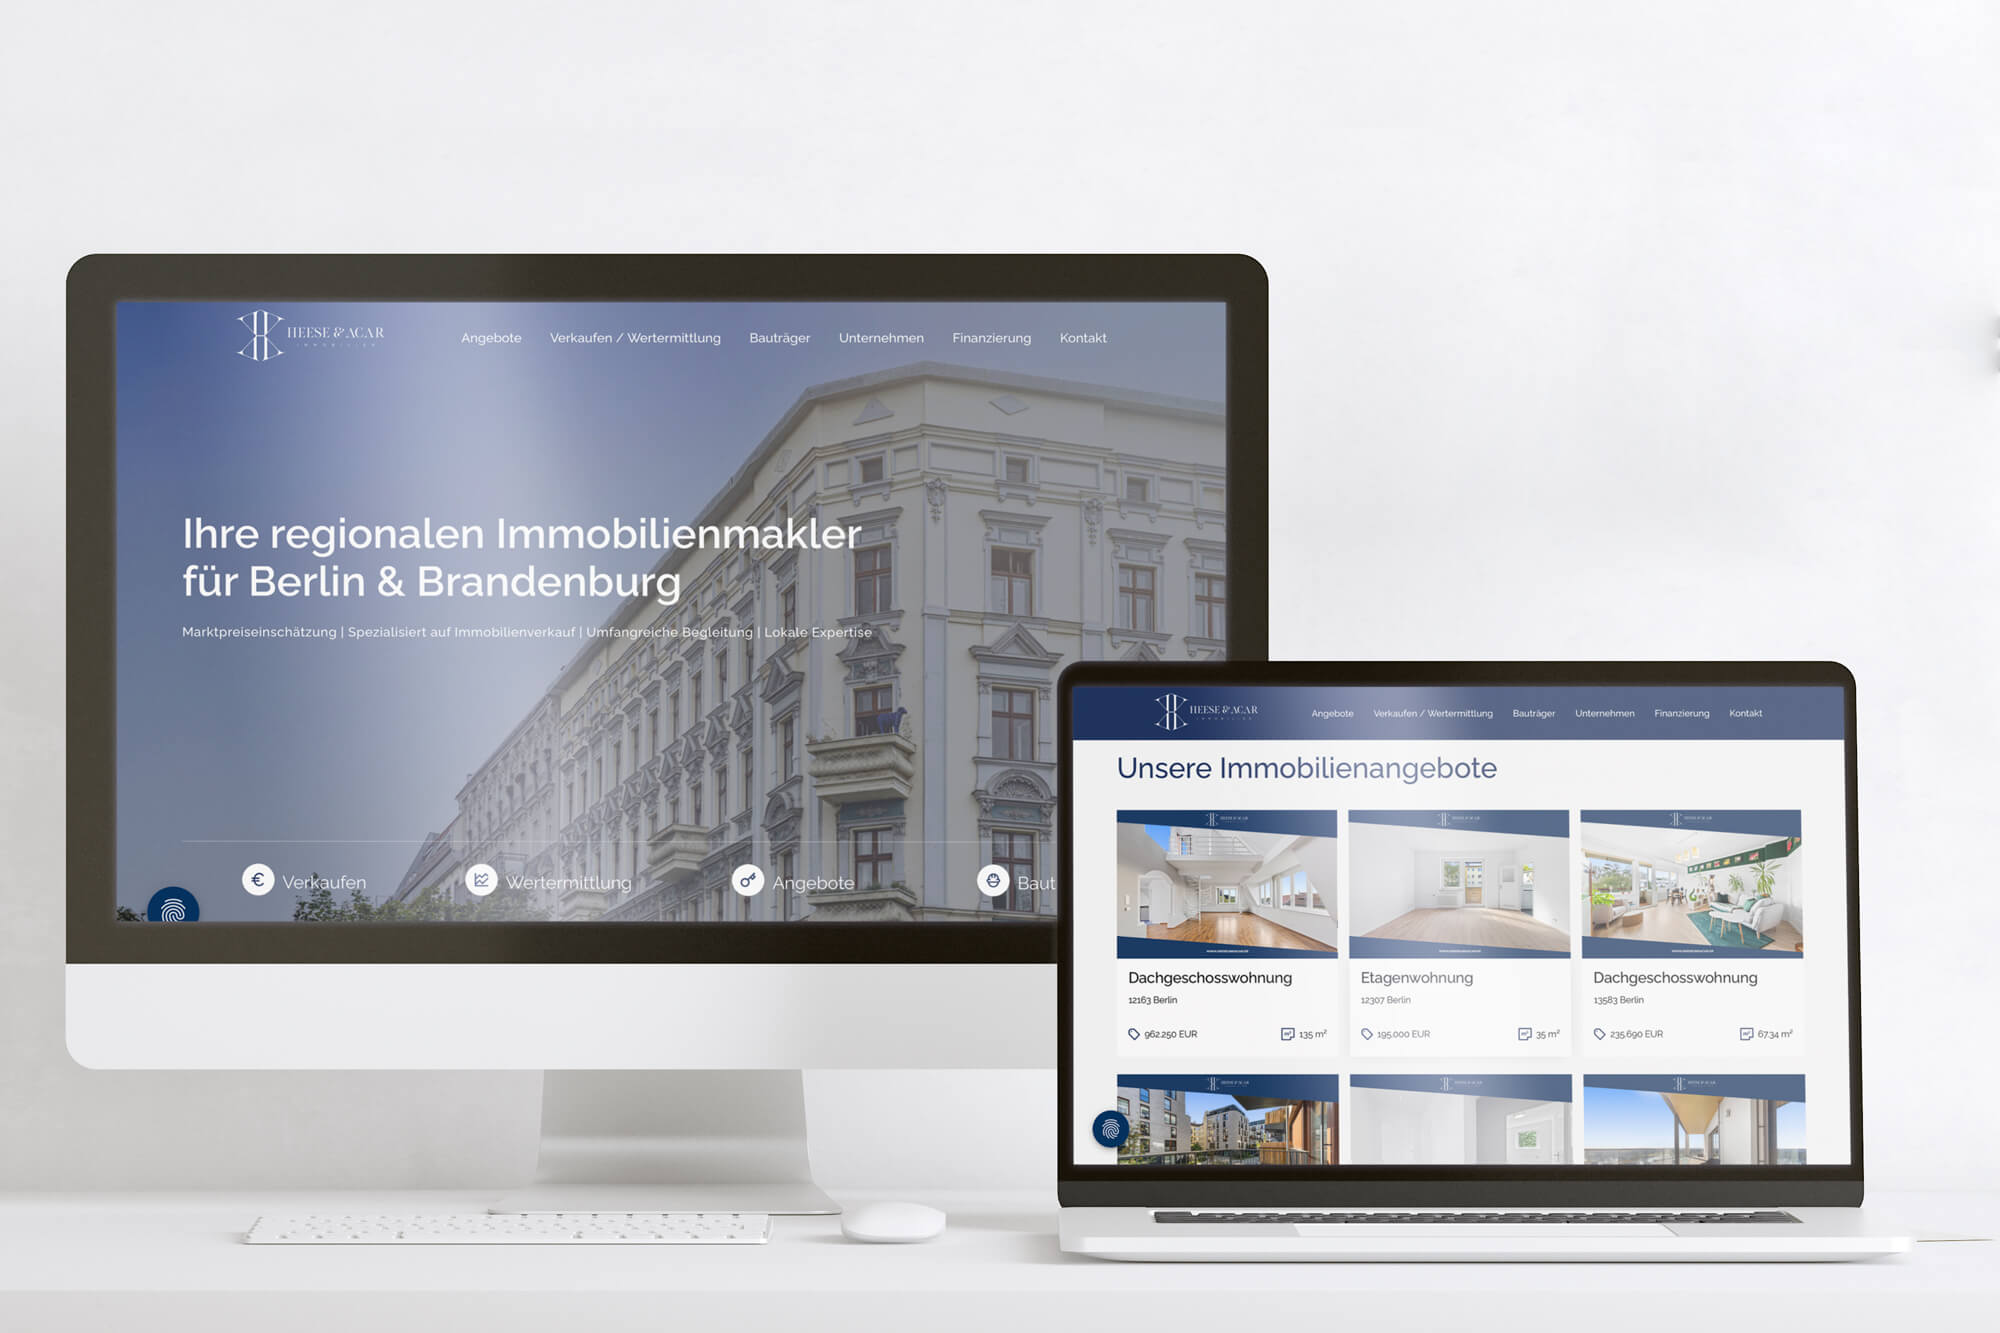 Ein Desktop- und ein Tablet-Bildschirm zeigen eine Immobilienmakler-Website mit Immobilienangeboten für Berlin und Brandenburg